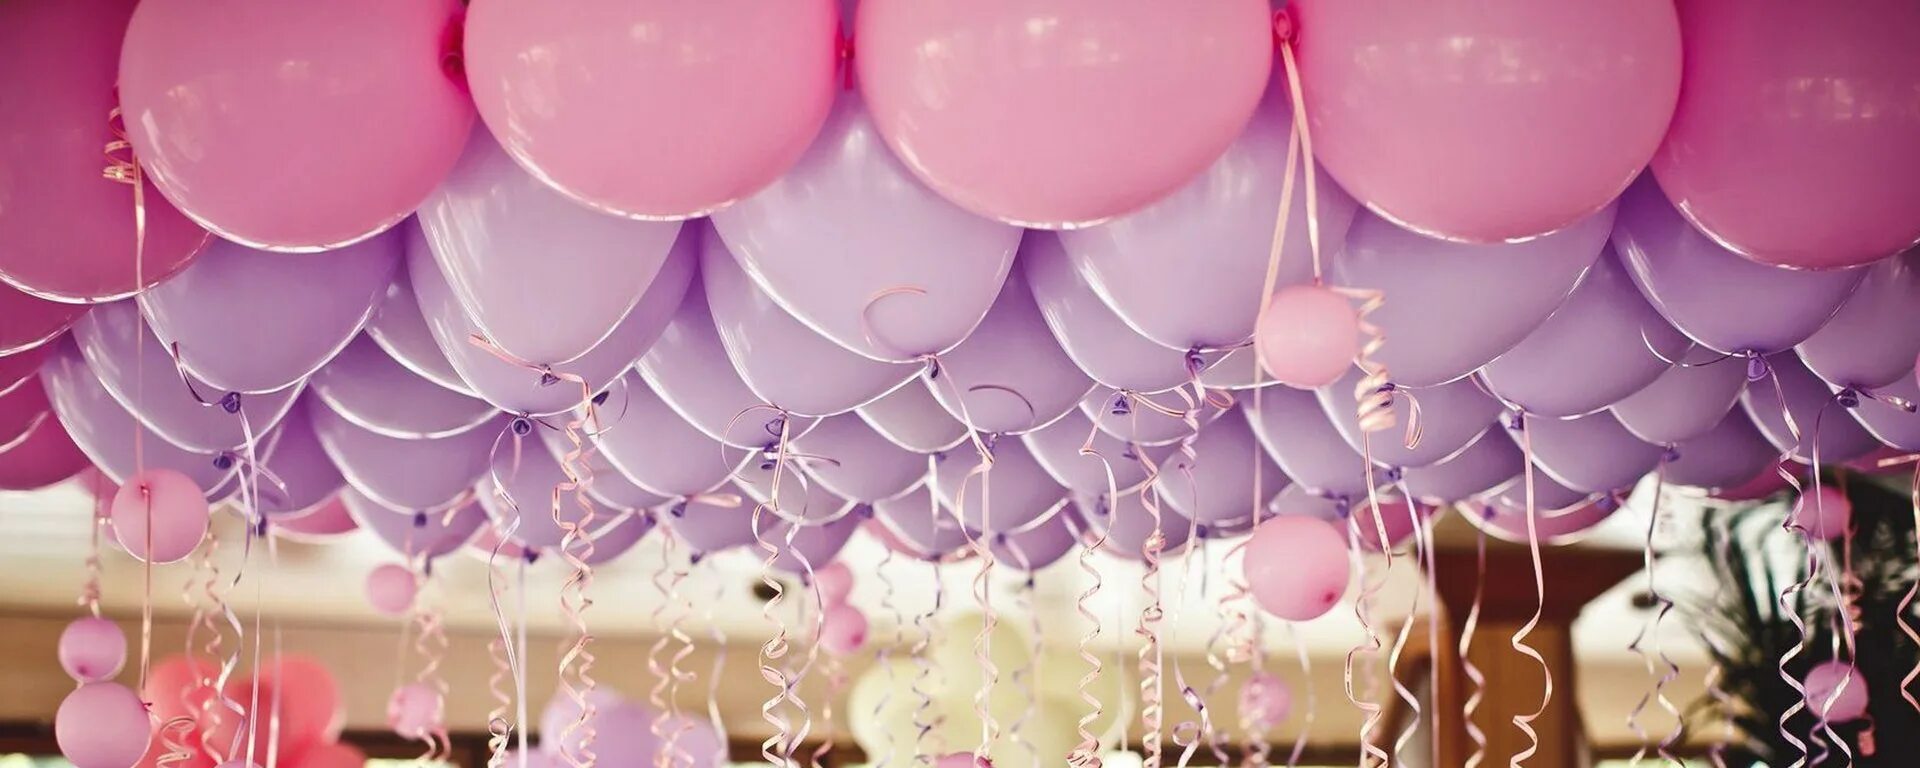 Шаров вконтакте. Гелевые шары баннер. Розовый фон с шарами. Розовые шары в интерьере. Обложка для ВК воздушные шары.